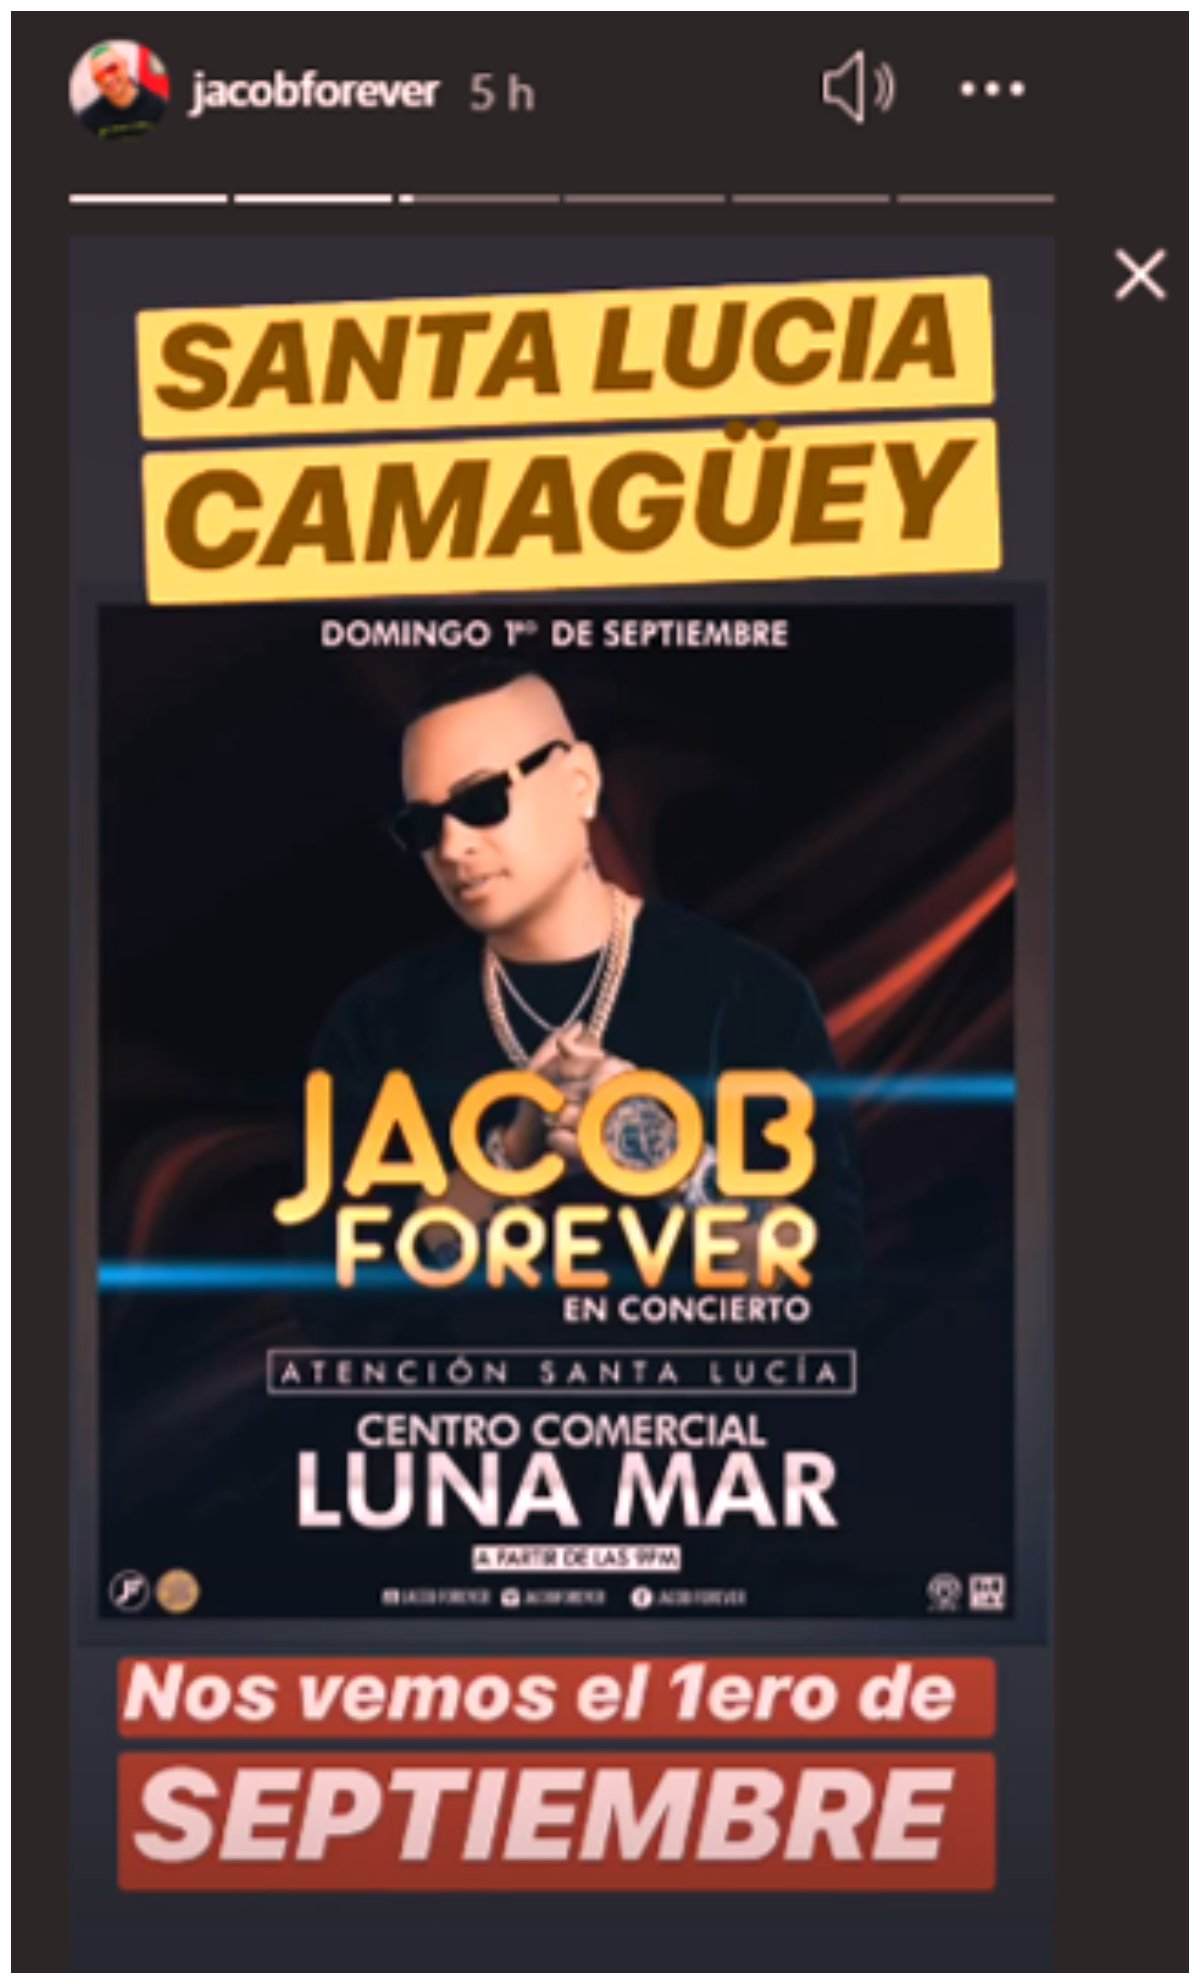 Jacob Forever dará concierto en Camagüey 